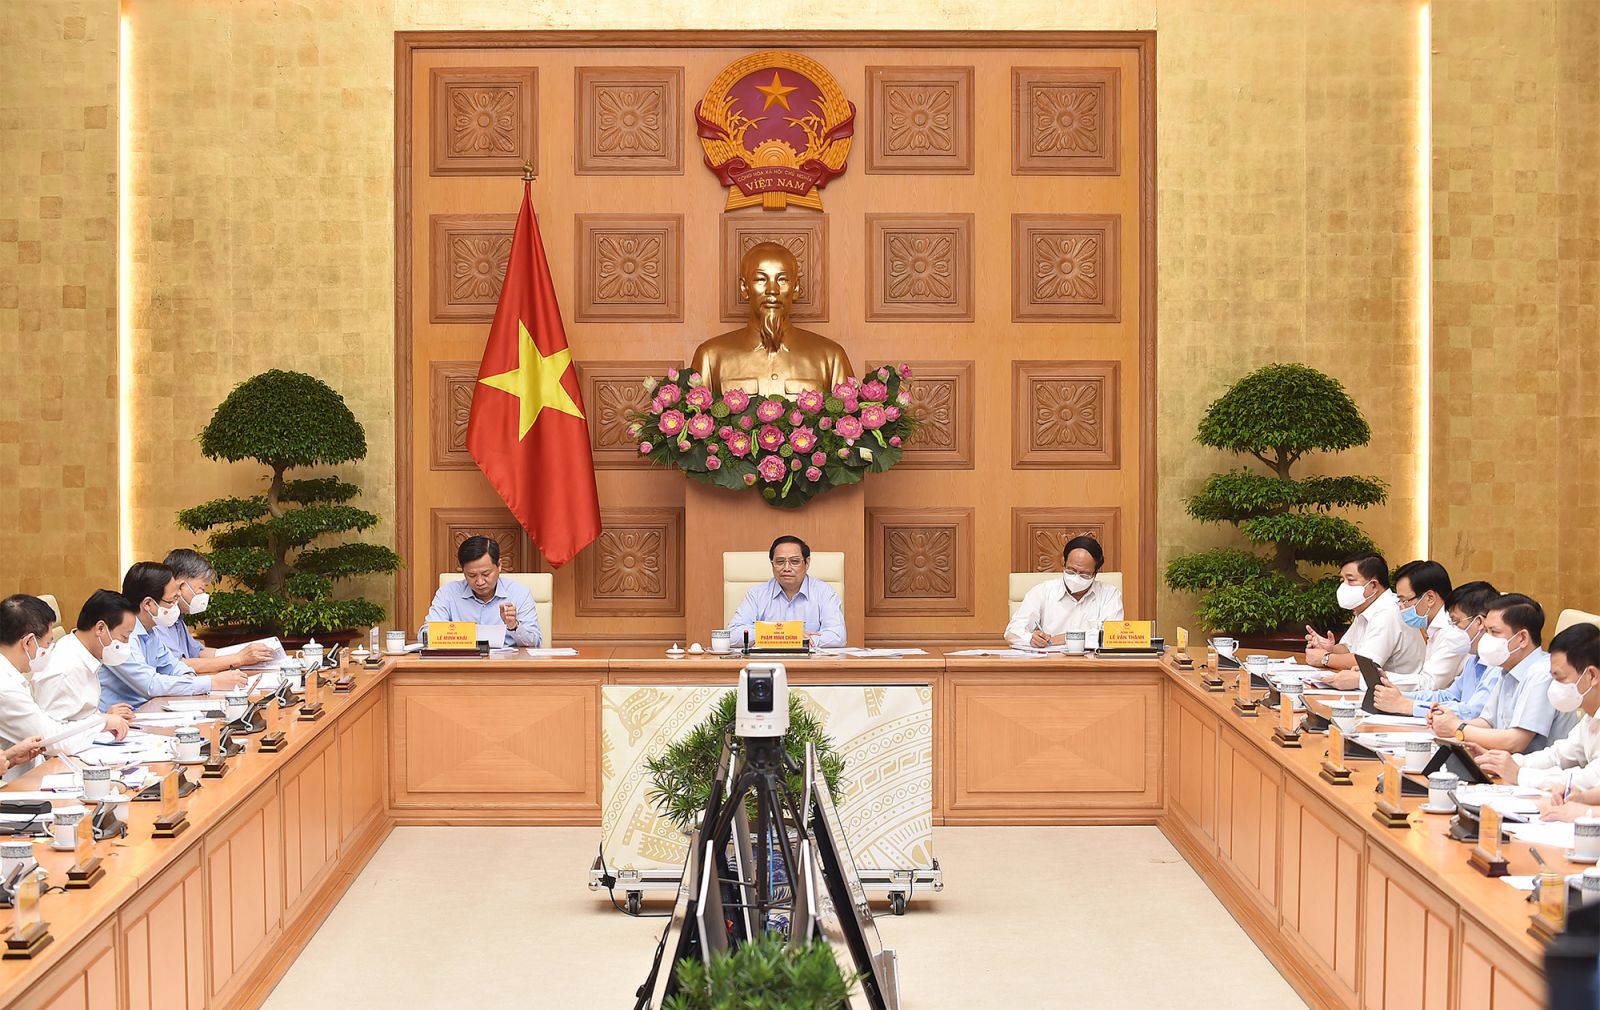 Thủ tướng Phạm Minh Chính chủ trì Hội nghị trực tuyến toàn quốc của Chính phủ để lắng nghe, chia sẻ, hỗ trợ, tháo gỡ khó khăn, thúc đẩy sản xuất kinh doanh cho doanh nghiệp trong bối cảnh đại dịch COVID-19